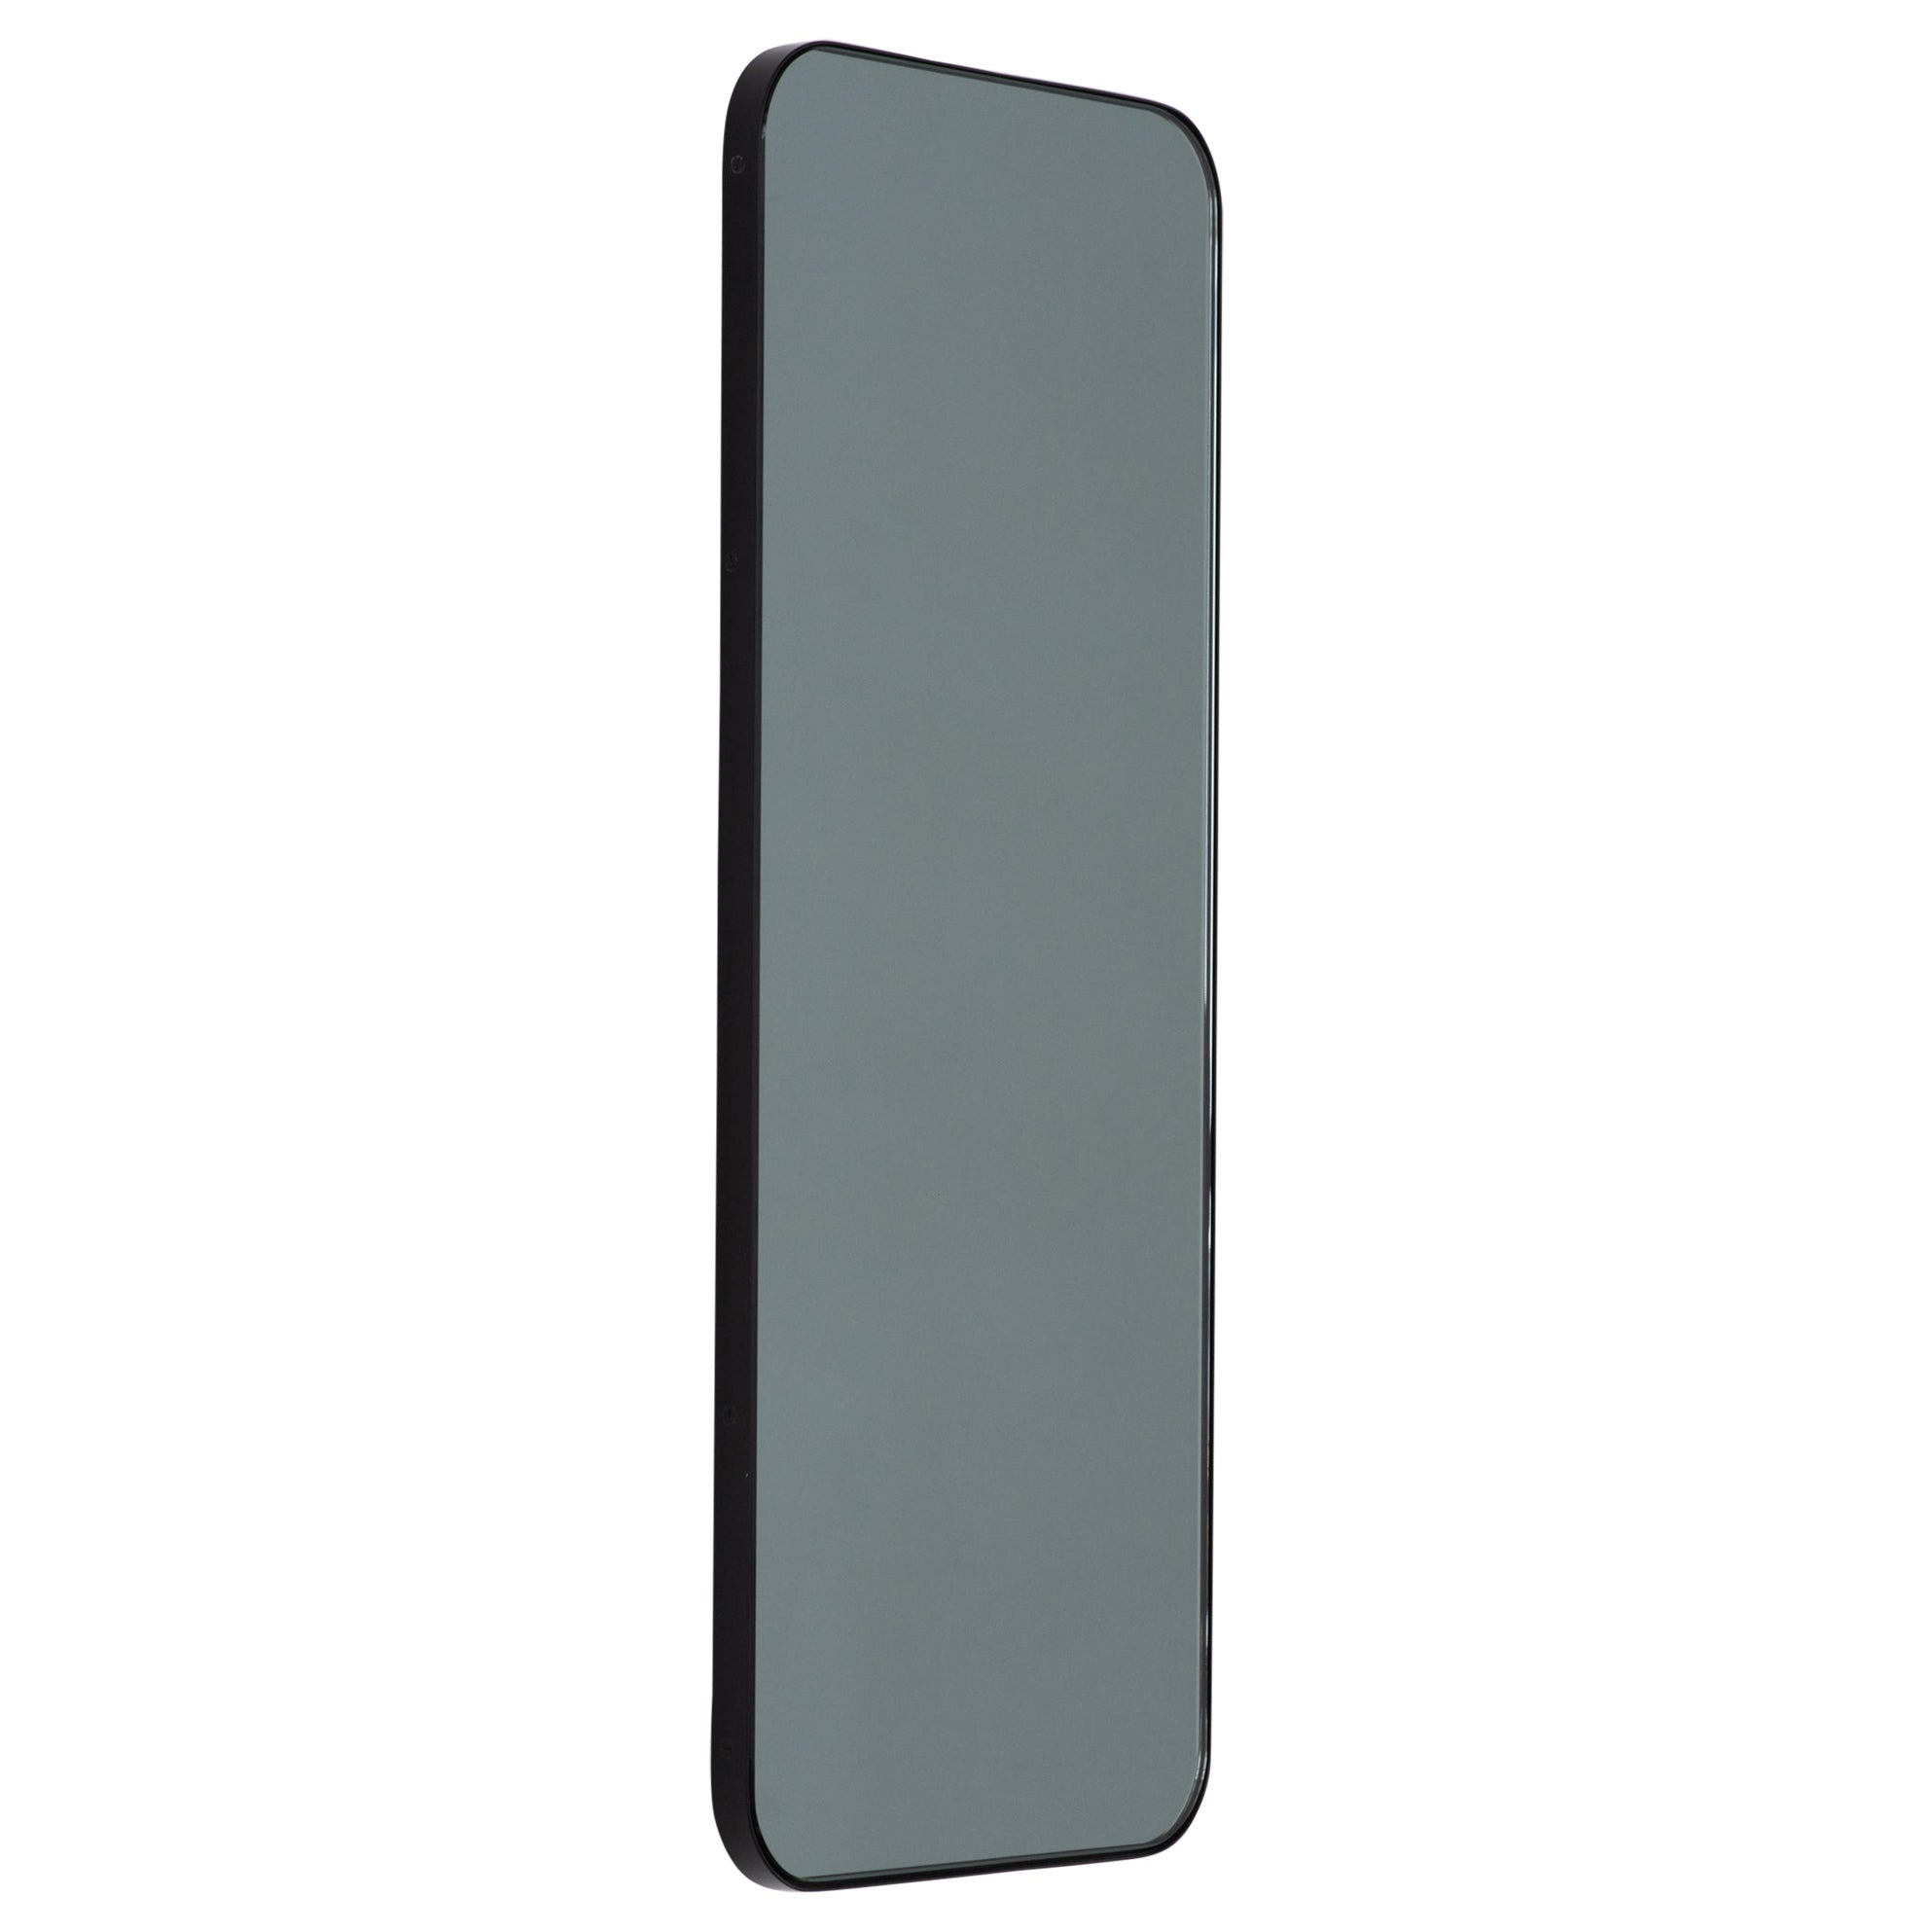 Quadris Black Tinted Rectangular Minimalist Mirror with a Black Frame, XL (miroir minimaliste rectangulaire teinté noir avec cadre noir)